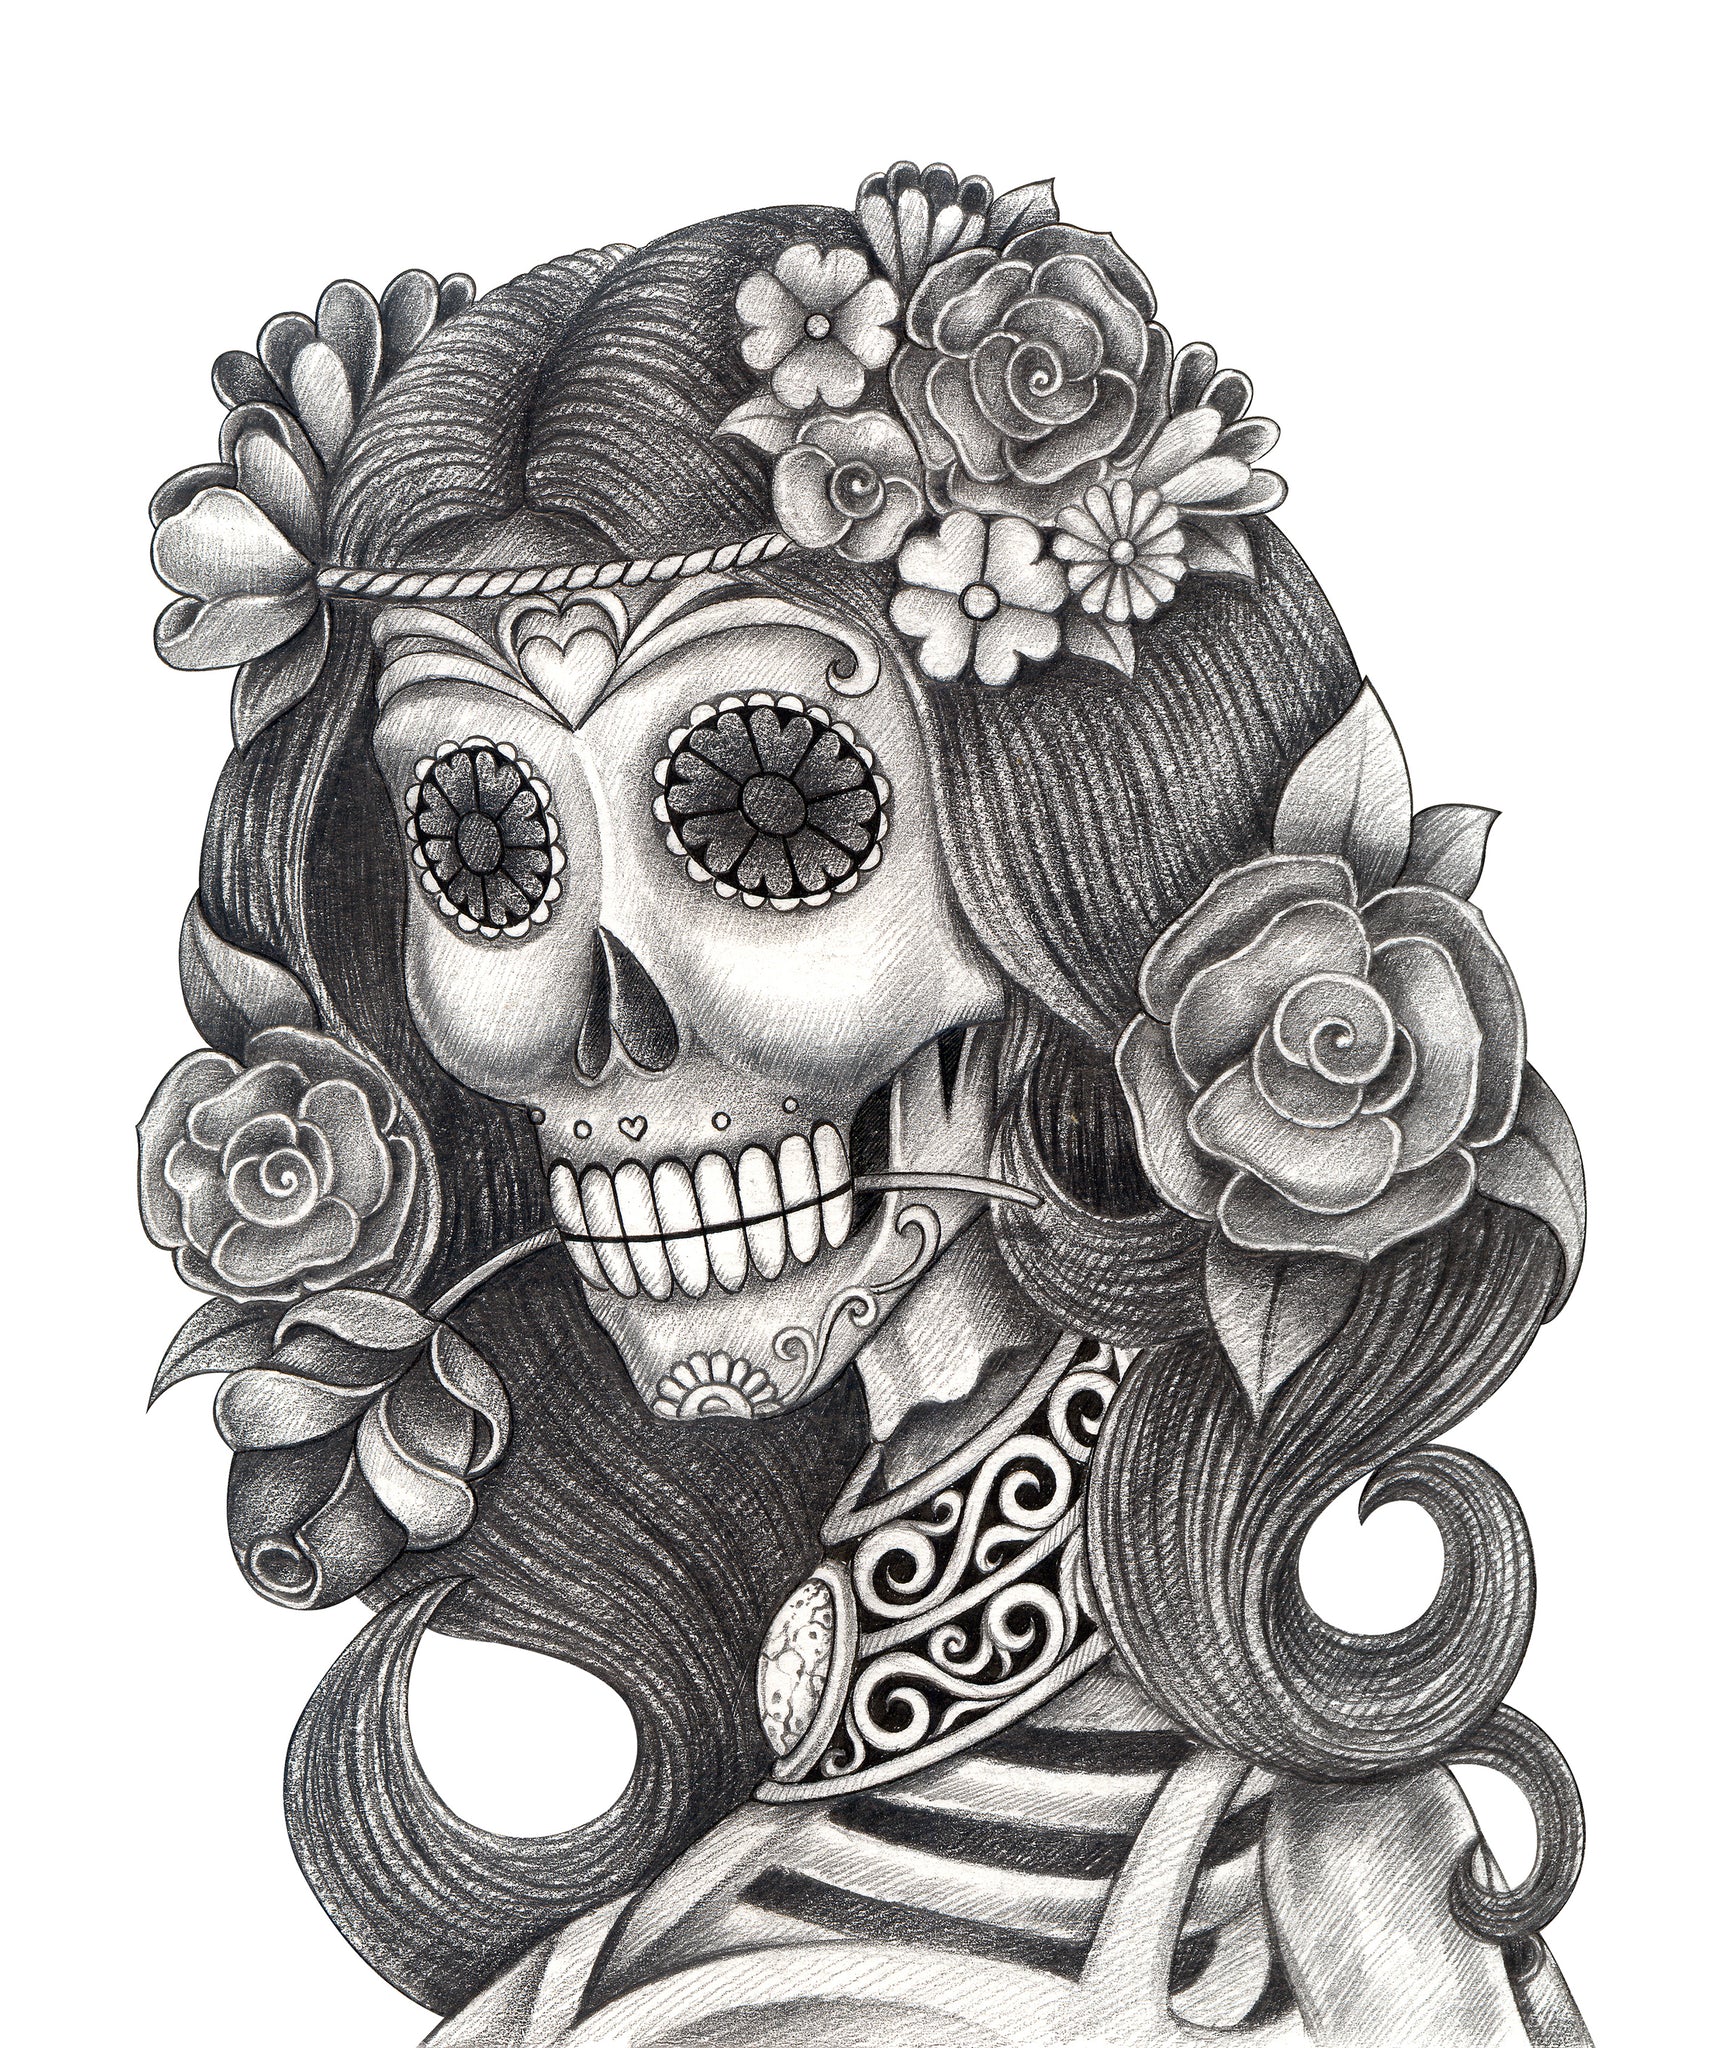 Pencil Sketch Dia De Los Muertos Woman with Rose Flower Crown Vinyl Decal Sticker